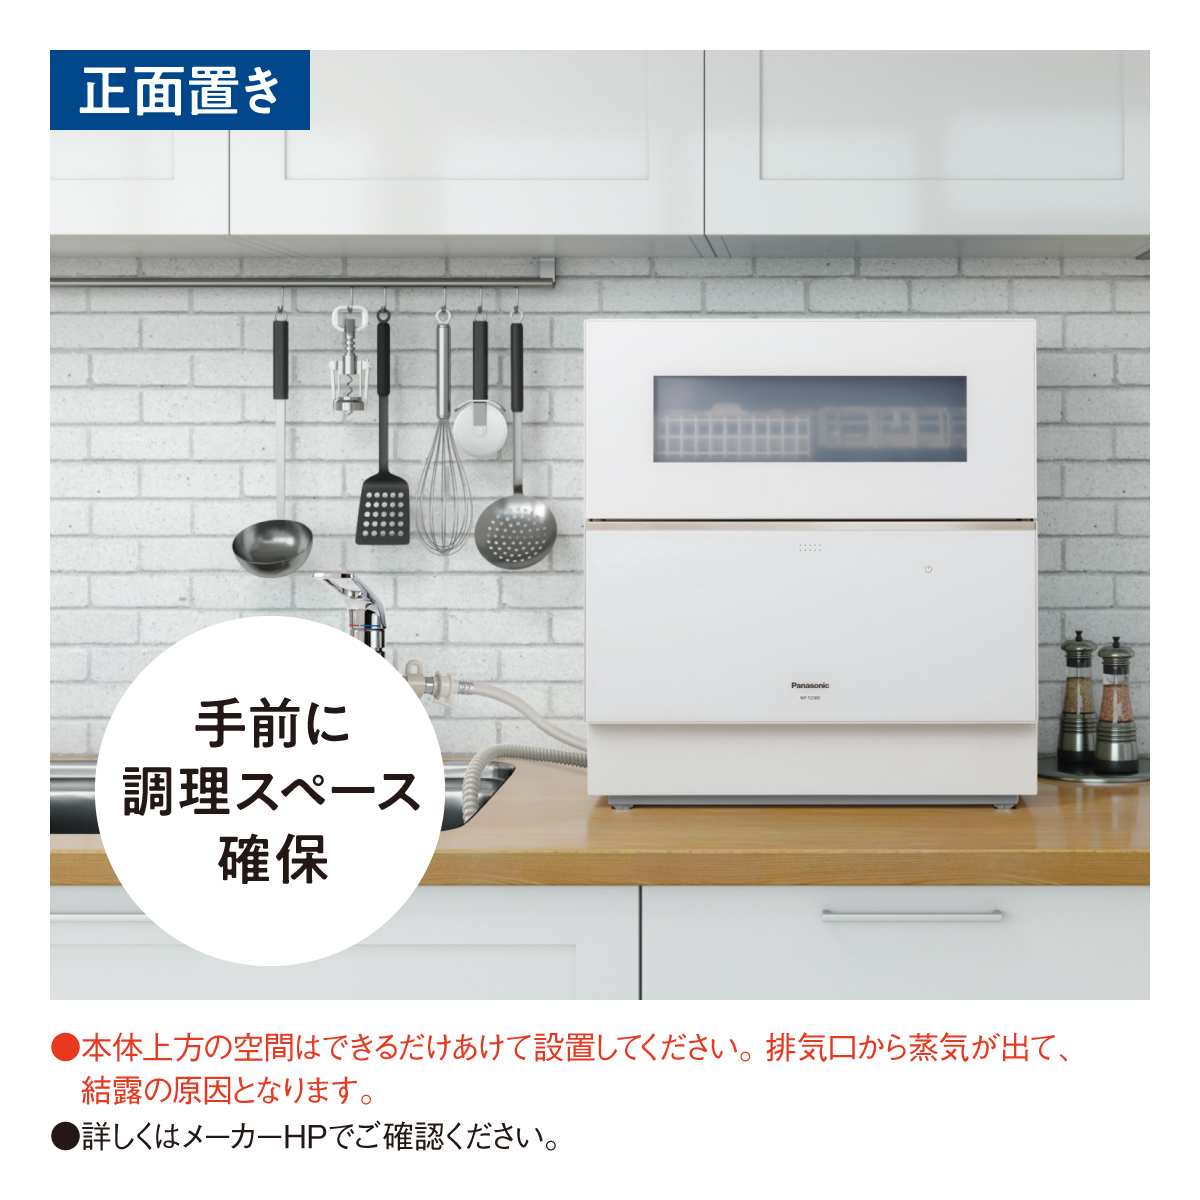 楽天市場 家電と住宅設備のジュプロNP-TZ300 卓上型食器洗い乾燥機 容量